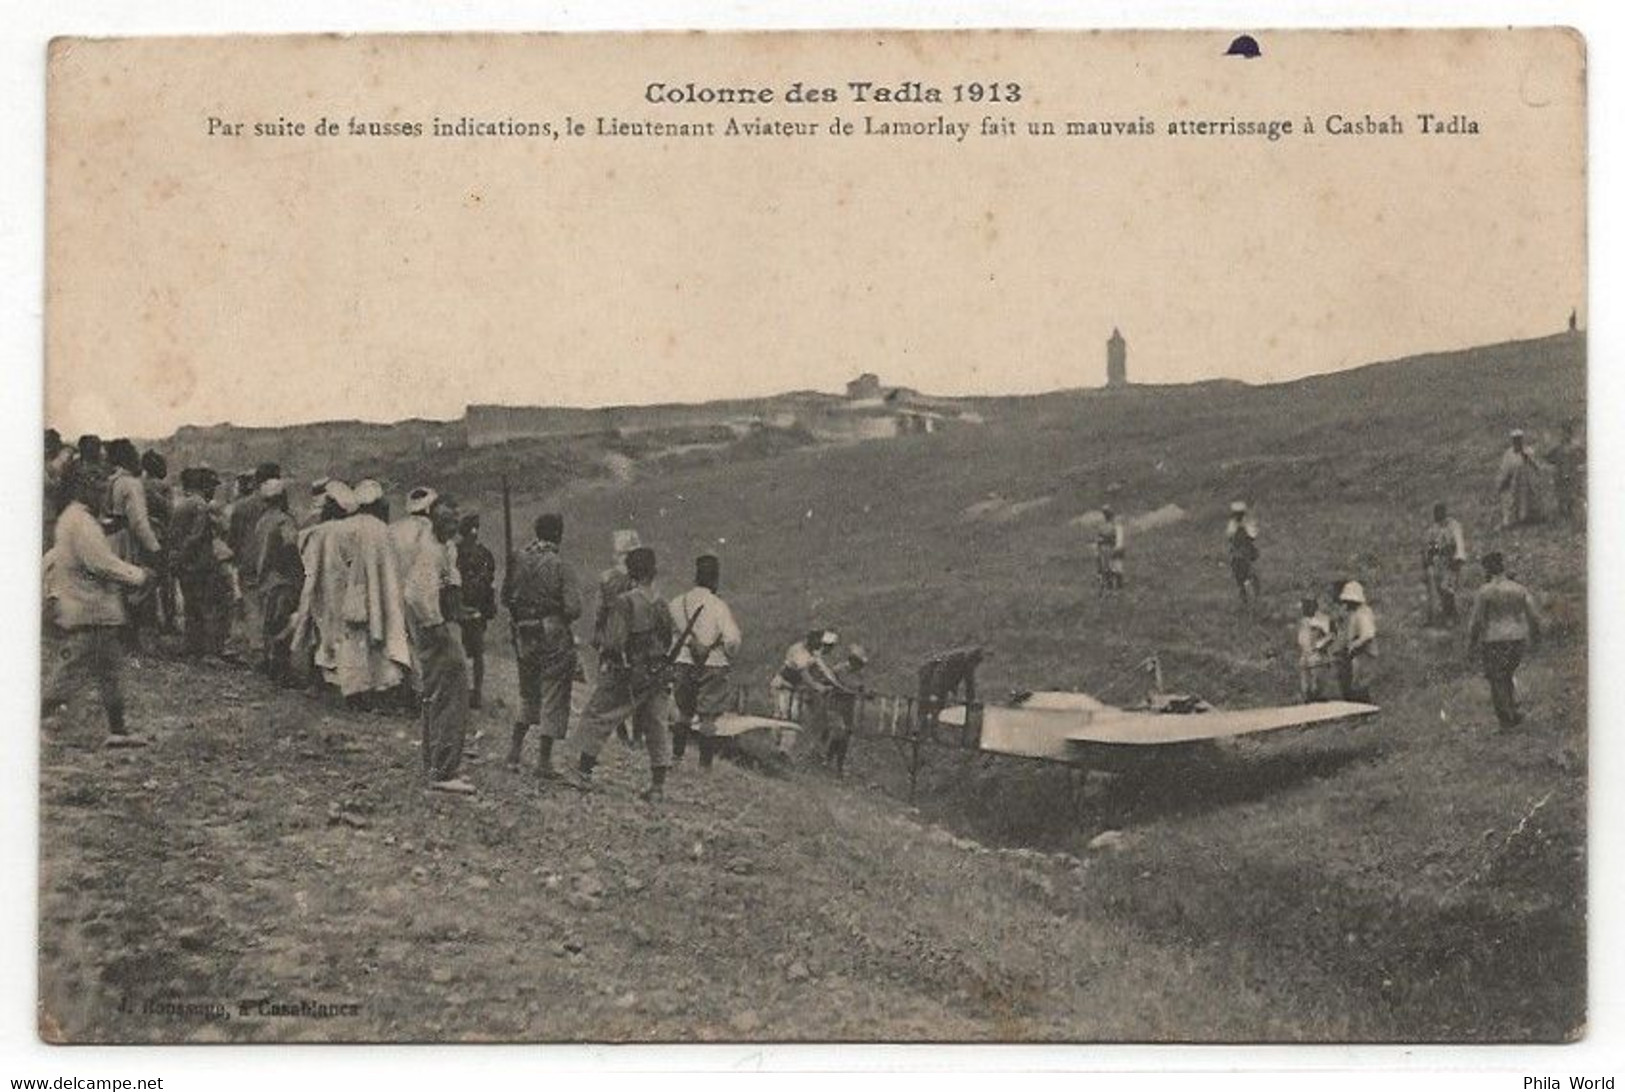 AERONAUTIQUE MILITAIRE - MAROC Campagne 1913 Colonne TADLA Casbah Mauvais Atterrissage Lieutenant Aviateur De LAMORLAY - Covers & Documents